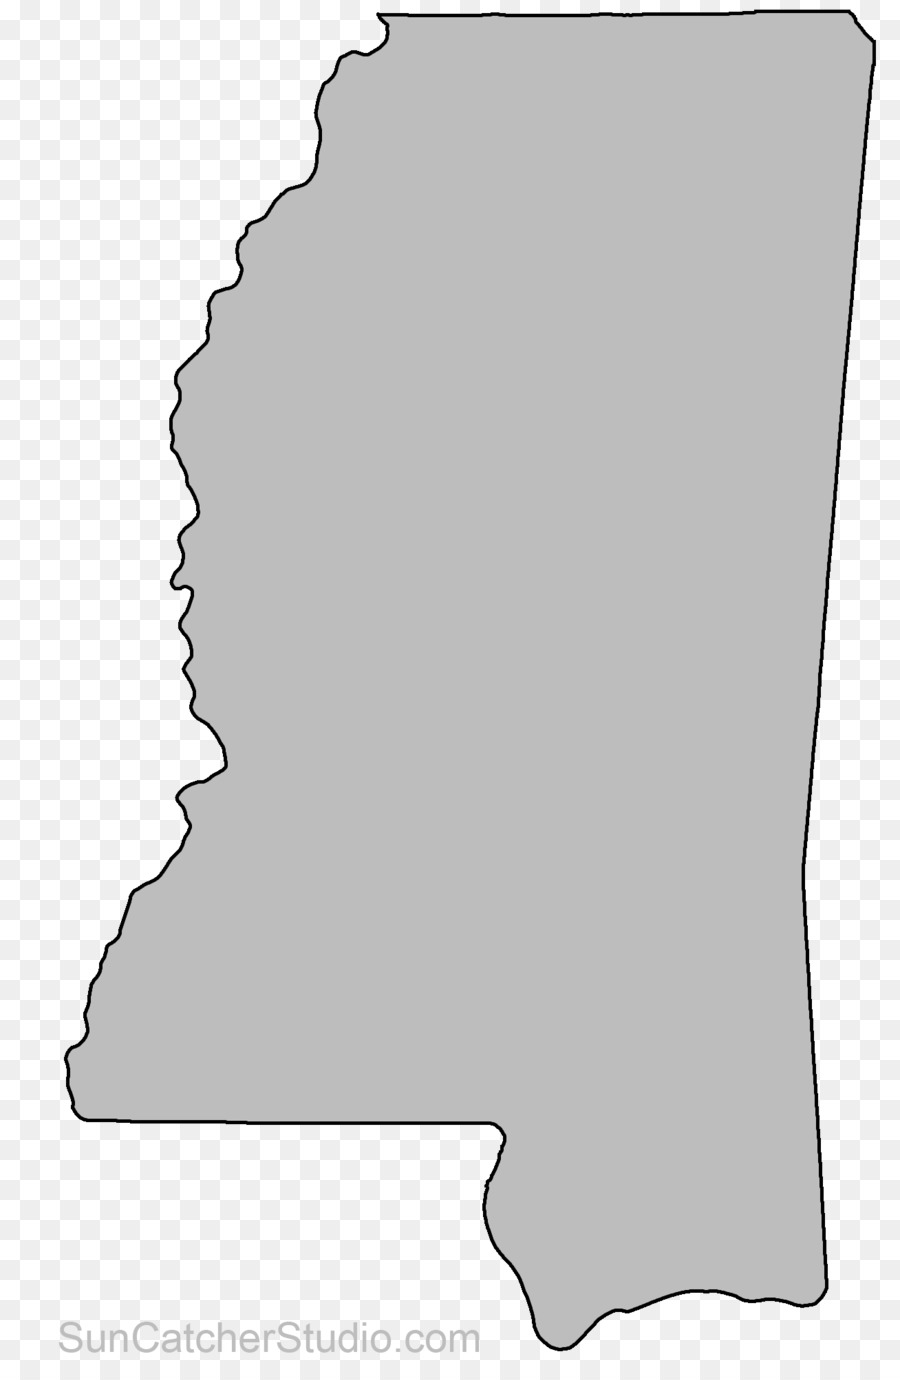 Mississippi Alabama Clip art Arkansas Ohio - miss vector png download - 1308*2000 - Free Transparent Mississippi png Download.